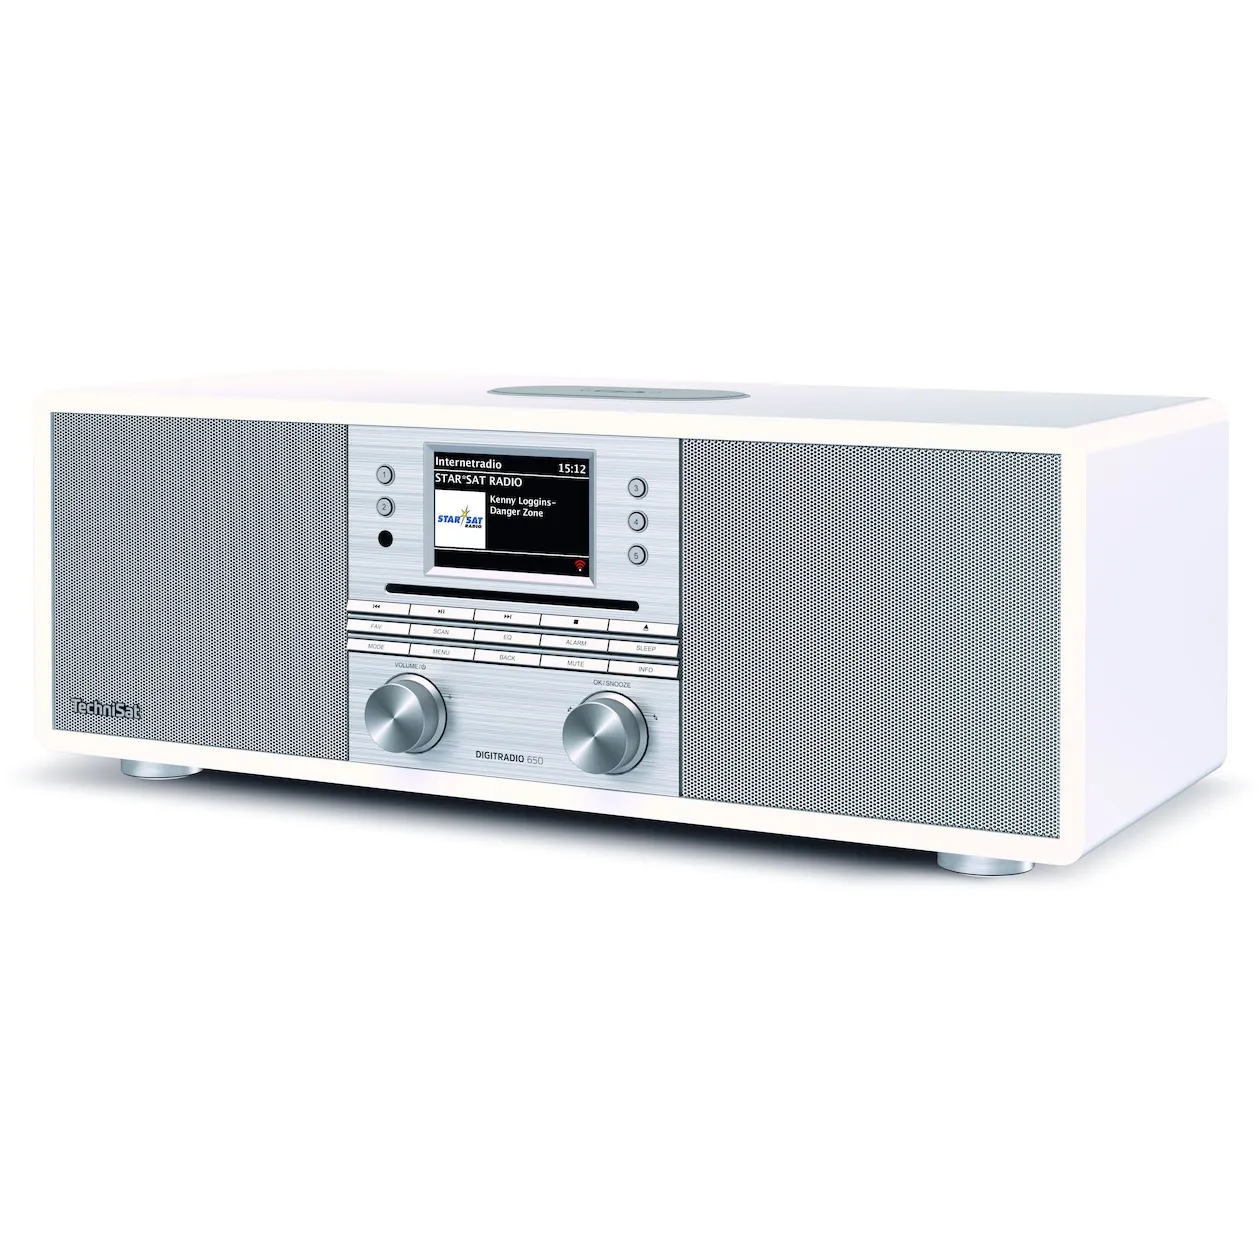 TechniSat Digitradio 650 Wit/zilver